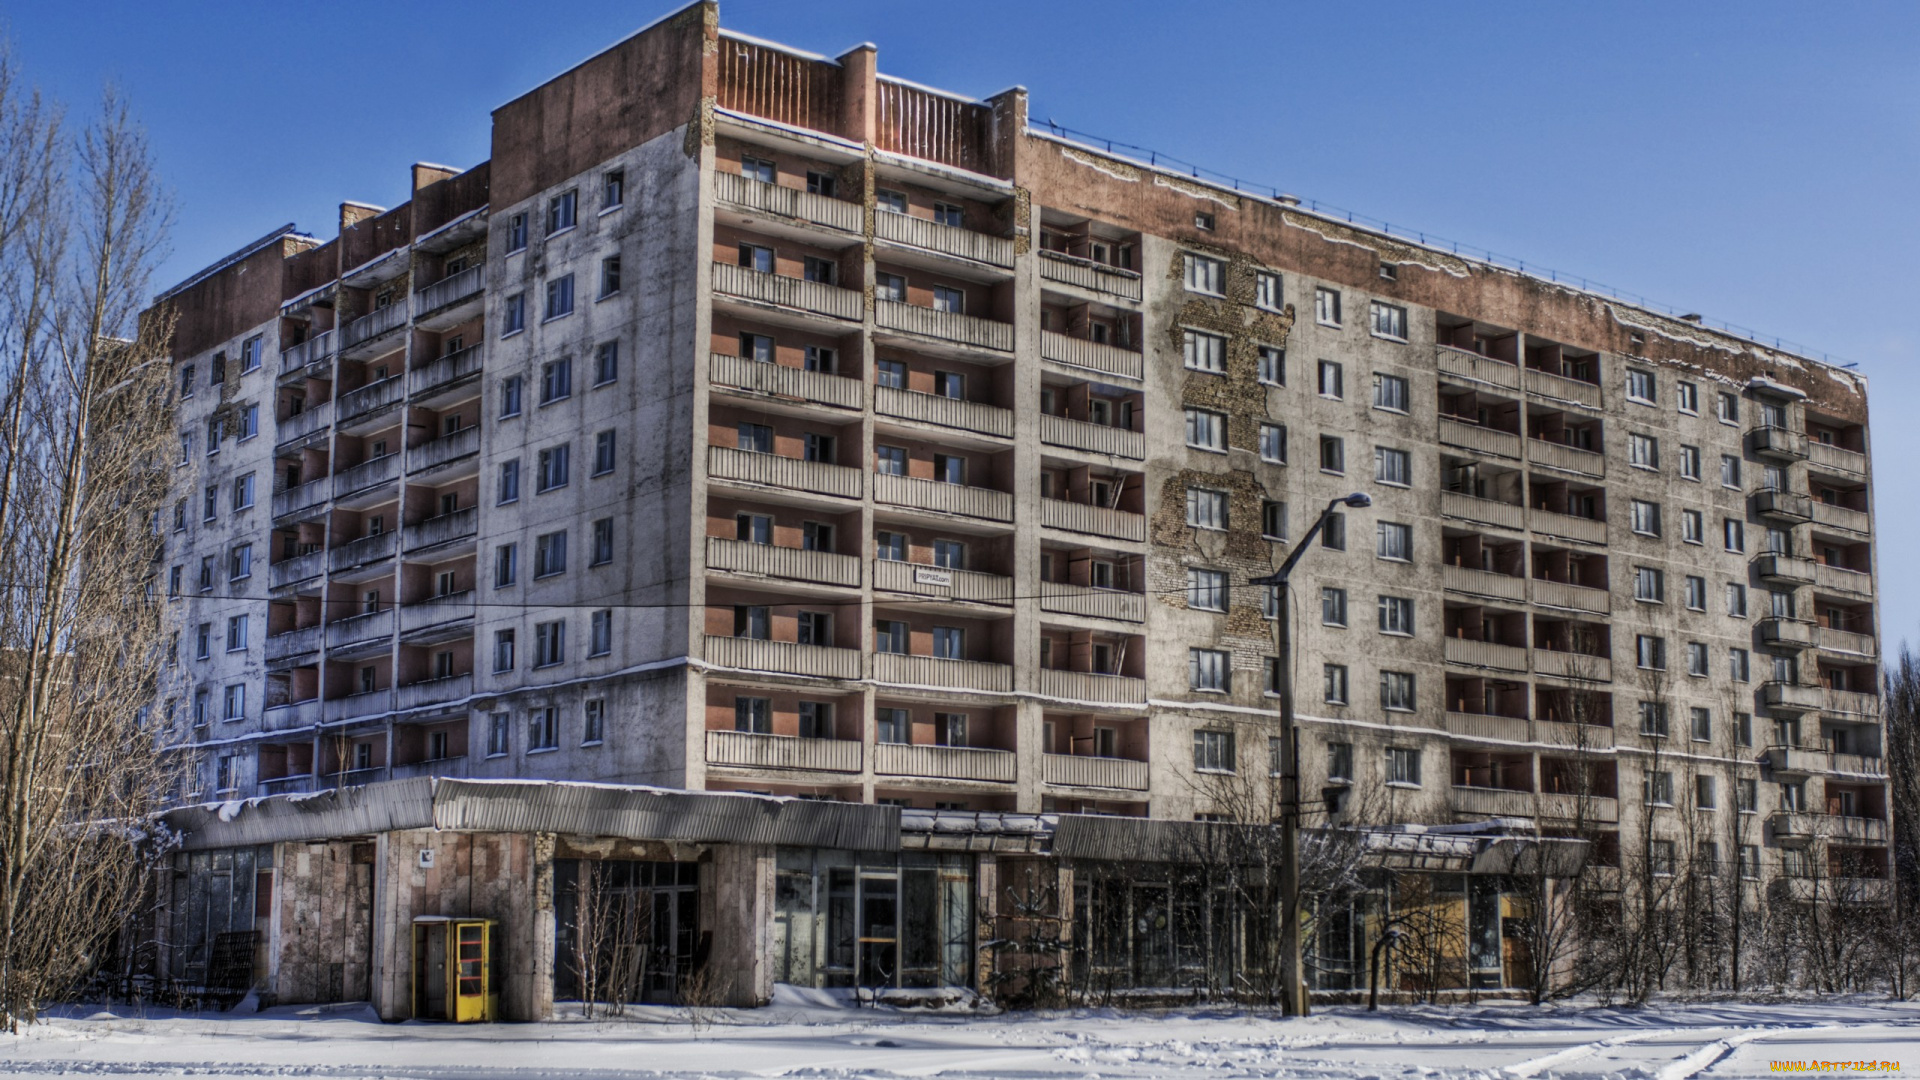 Чернобыль, излучённый, жилой, жом, разное, развалины, руины, металлолом